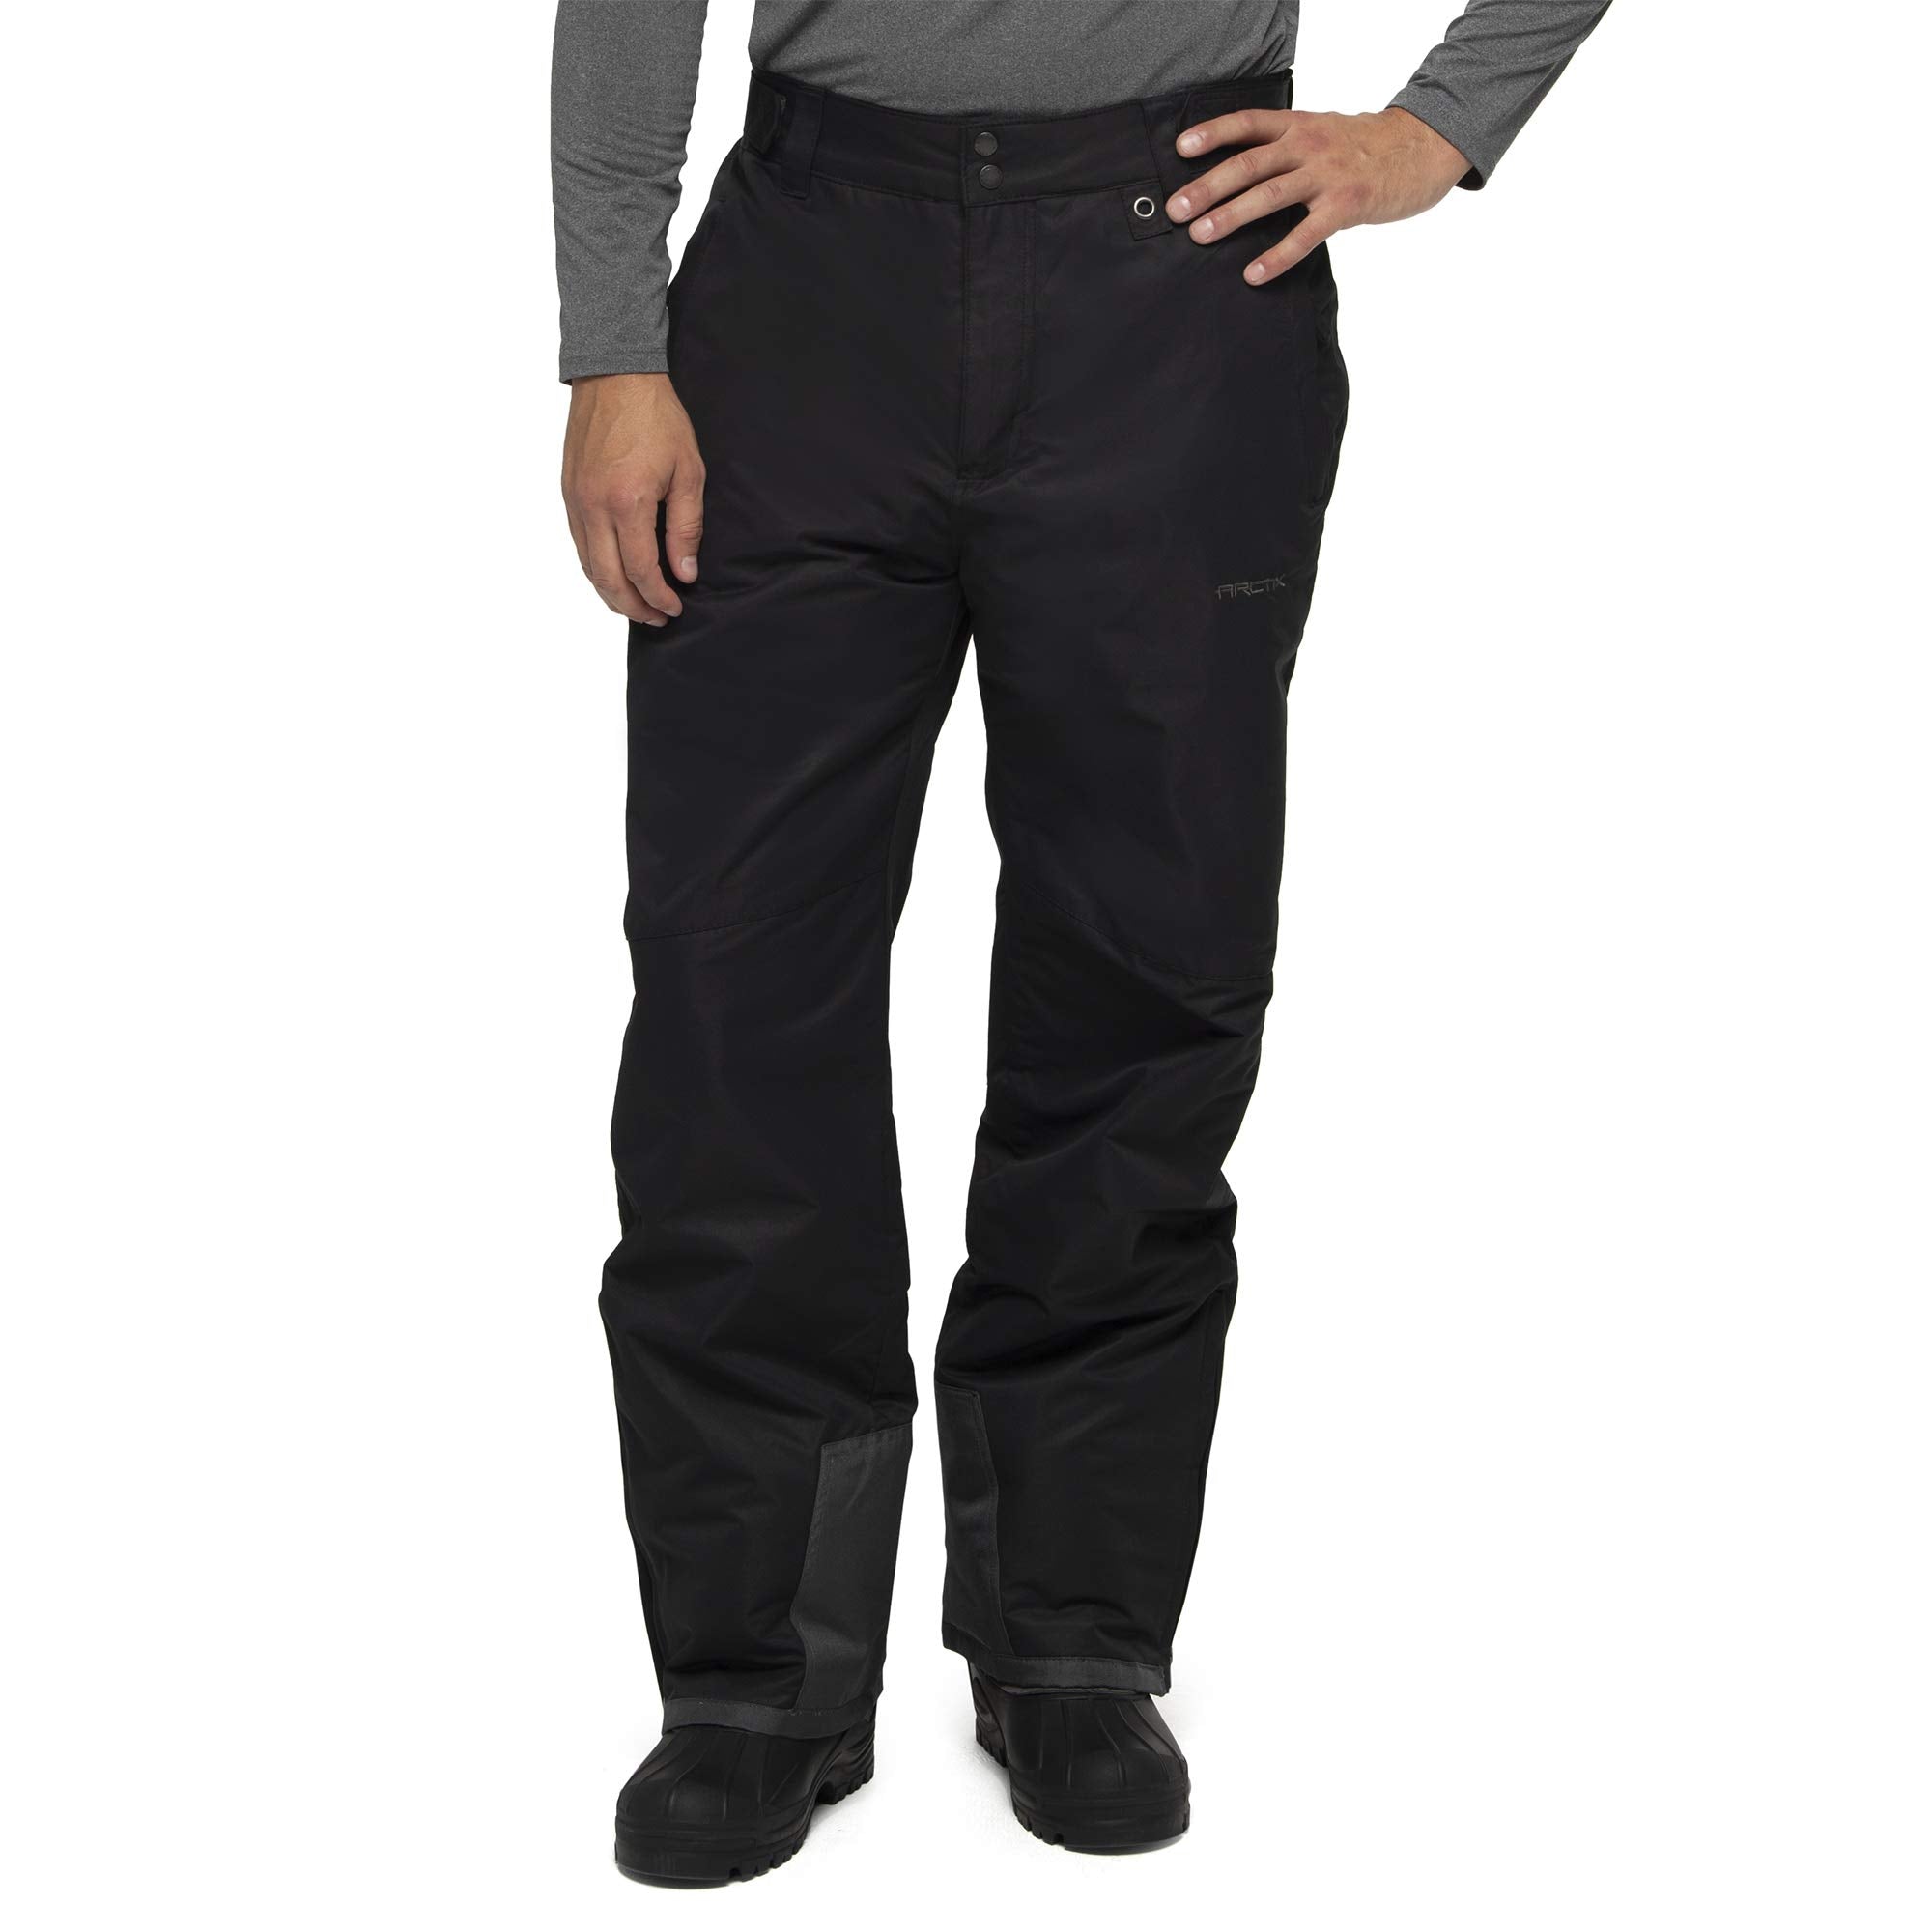 Arctix Men's Essential Snow Pants, Black, X-Large (40-42W 28L)